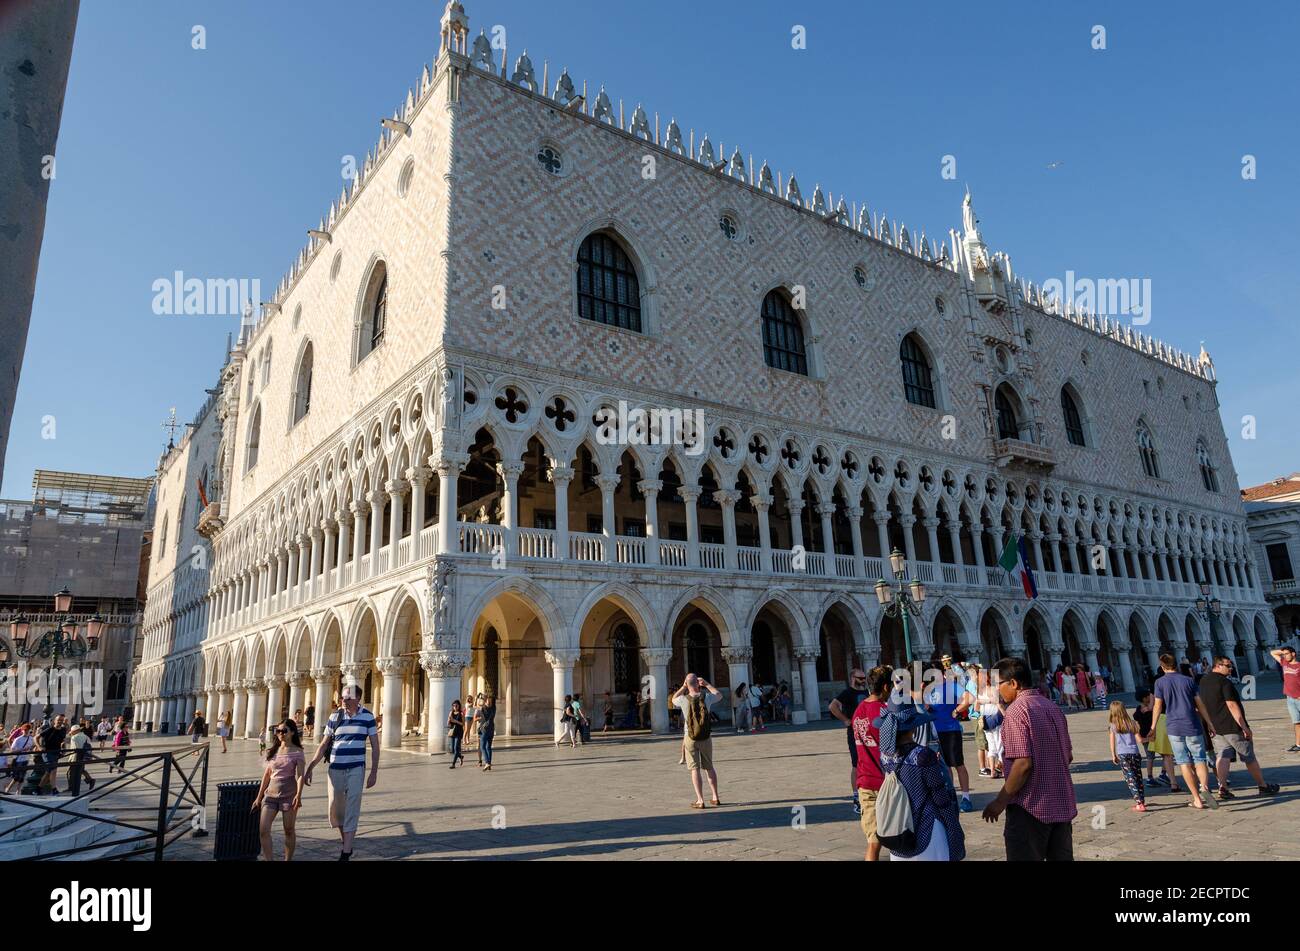 Il Palazzo Ducale è un palazzo costruito in stile gotico veneziano, e uno dei principali punti di riferimento della città di Venezia nel nord Italia. Foto Stock